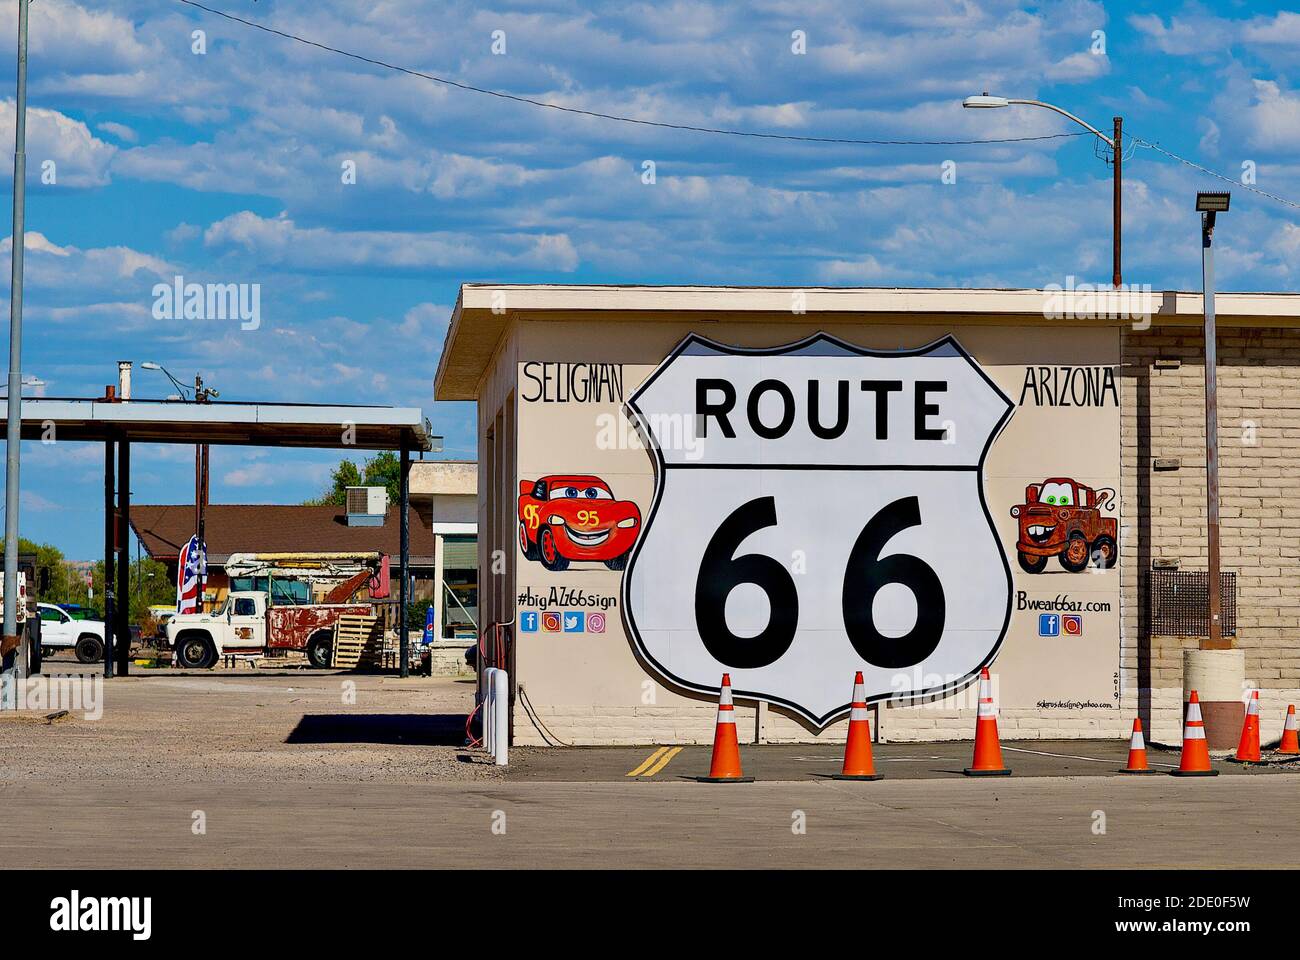 Seligman, Arizona, USA - 30 luglio 2020: Un grande dipinto di un cartello 'Route 66' accoglie i visitatori della città di Seligman, situata sulla storica Route 66. Foto Stock